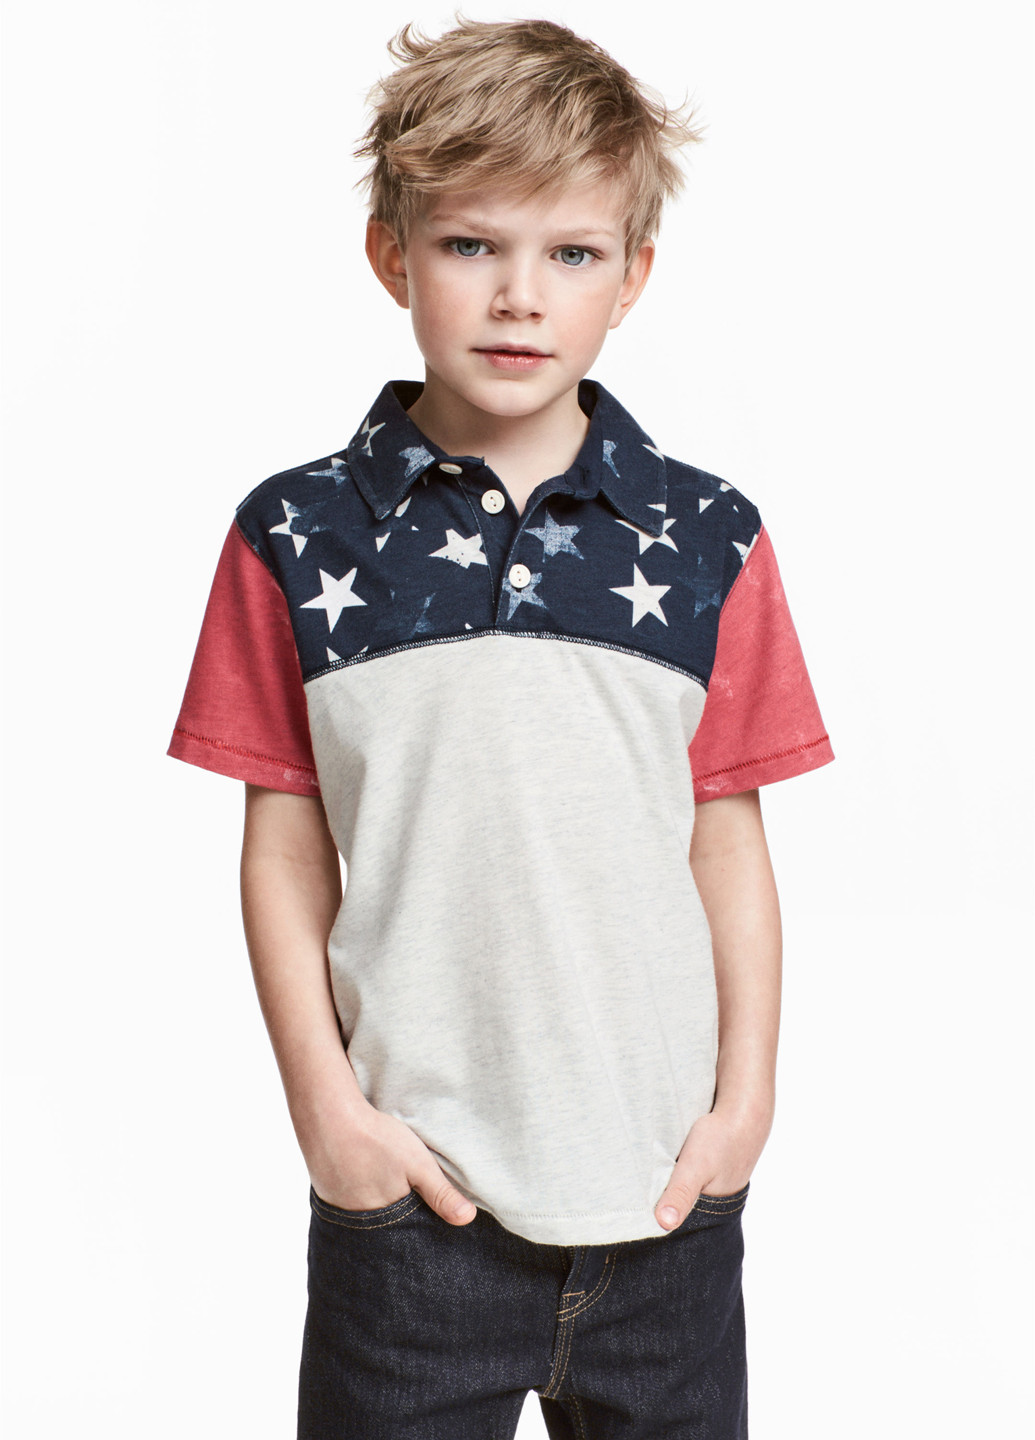 Цветная детская футболка-поло для мальчика H&M